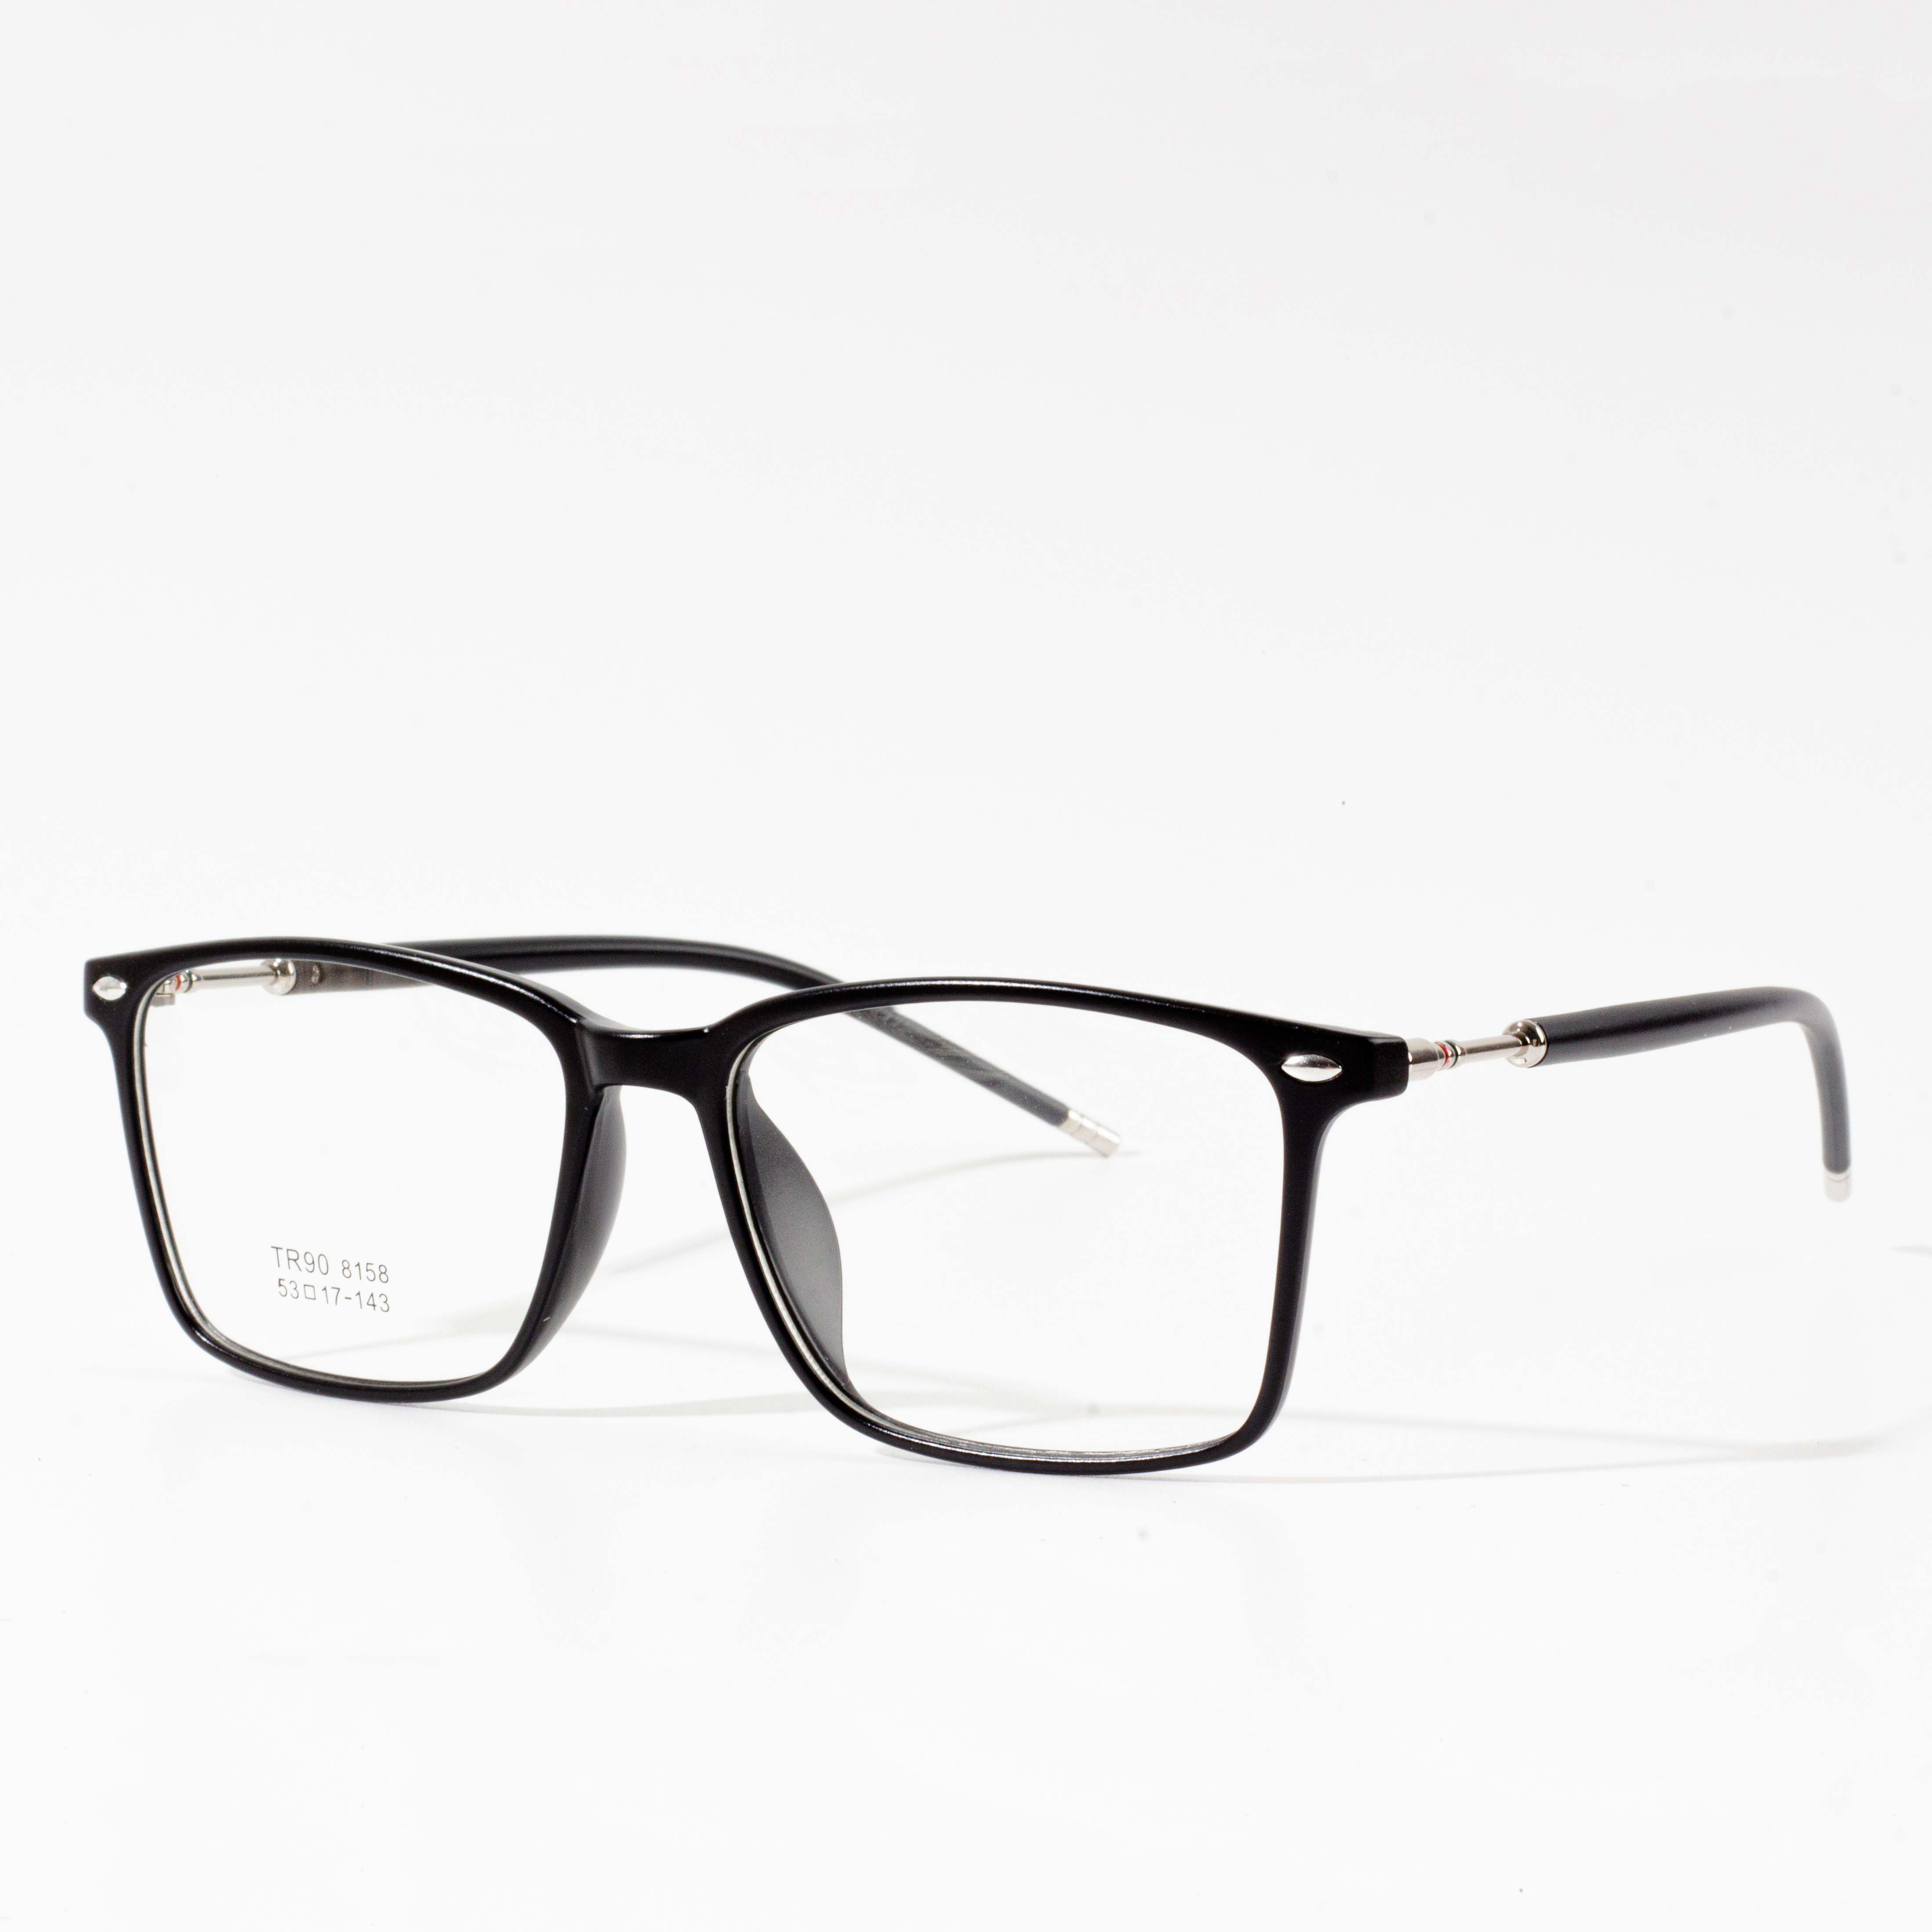 fframiau eyeglass mwyaf newydd ar gyfer 2022